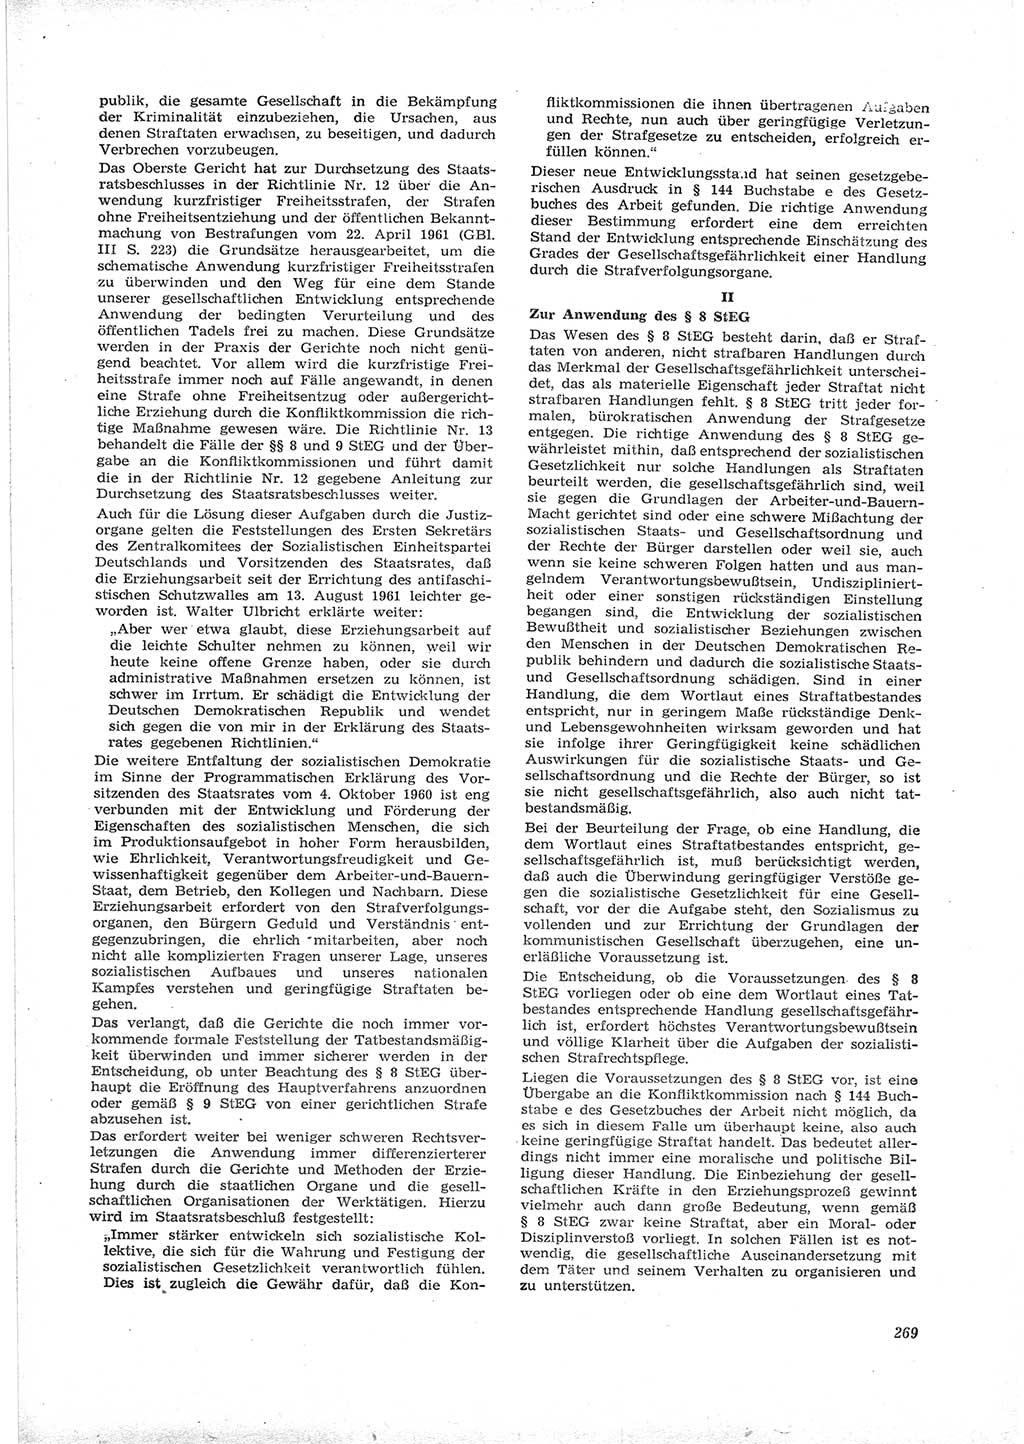 Neue Justiz (NJ), Zeitschrift für Recht und Rechtswissenschaft [Deutsche Demokratische Republik (DDR)], 16. Jahrgang 1962, Seite 269 (NJ DDR 1962, S. 269)